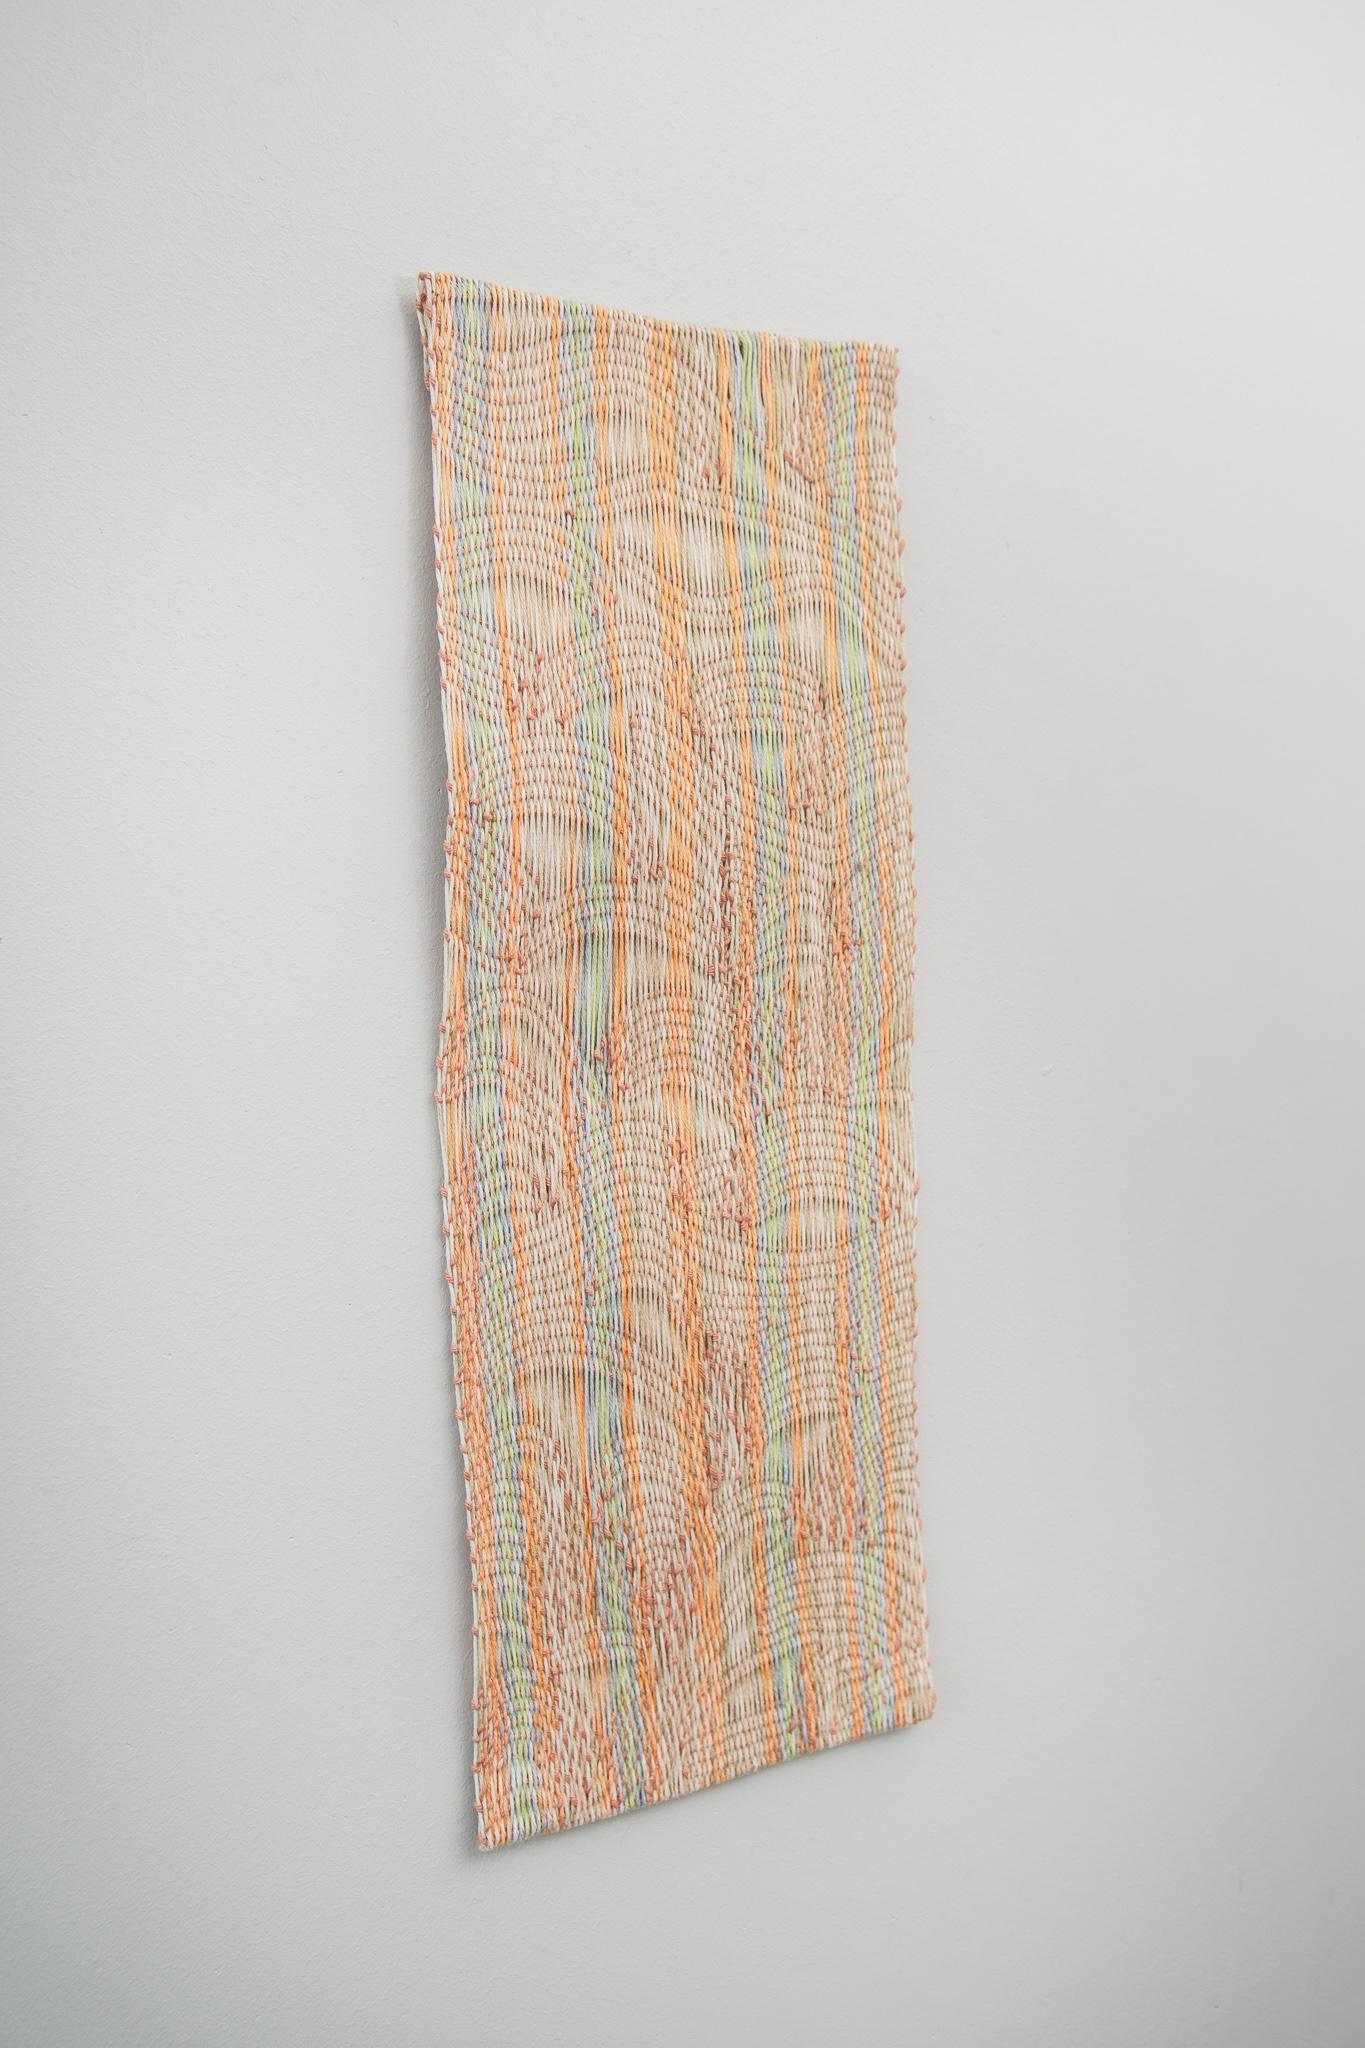 Untitled, Lynette Diergaardt, 100% Cotton Hand Woven, fiber art, textile For Sale 4